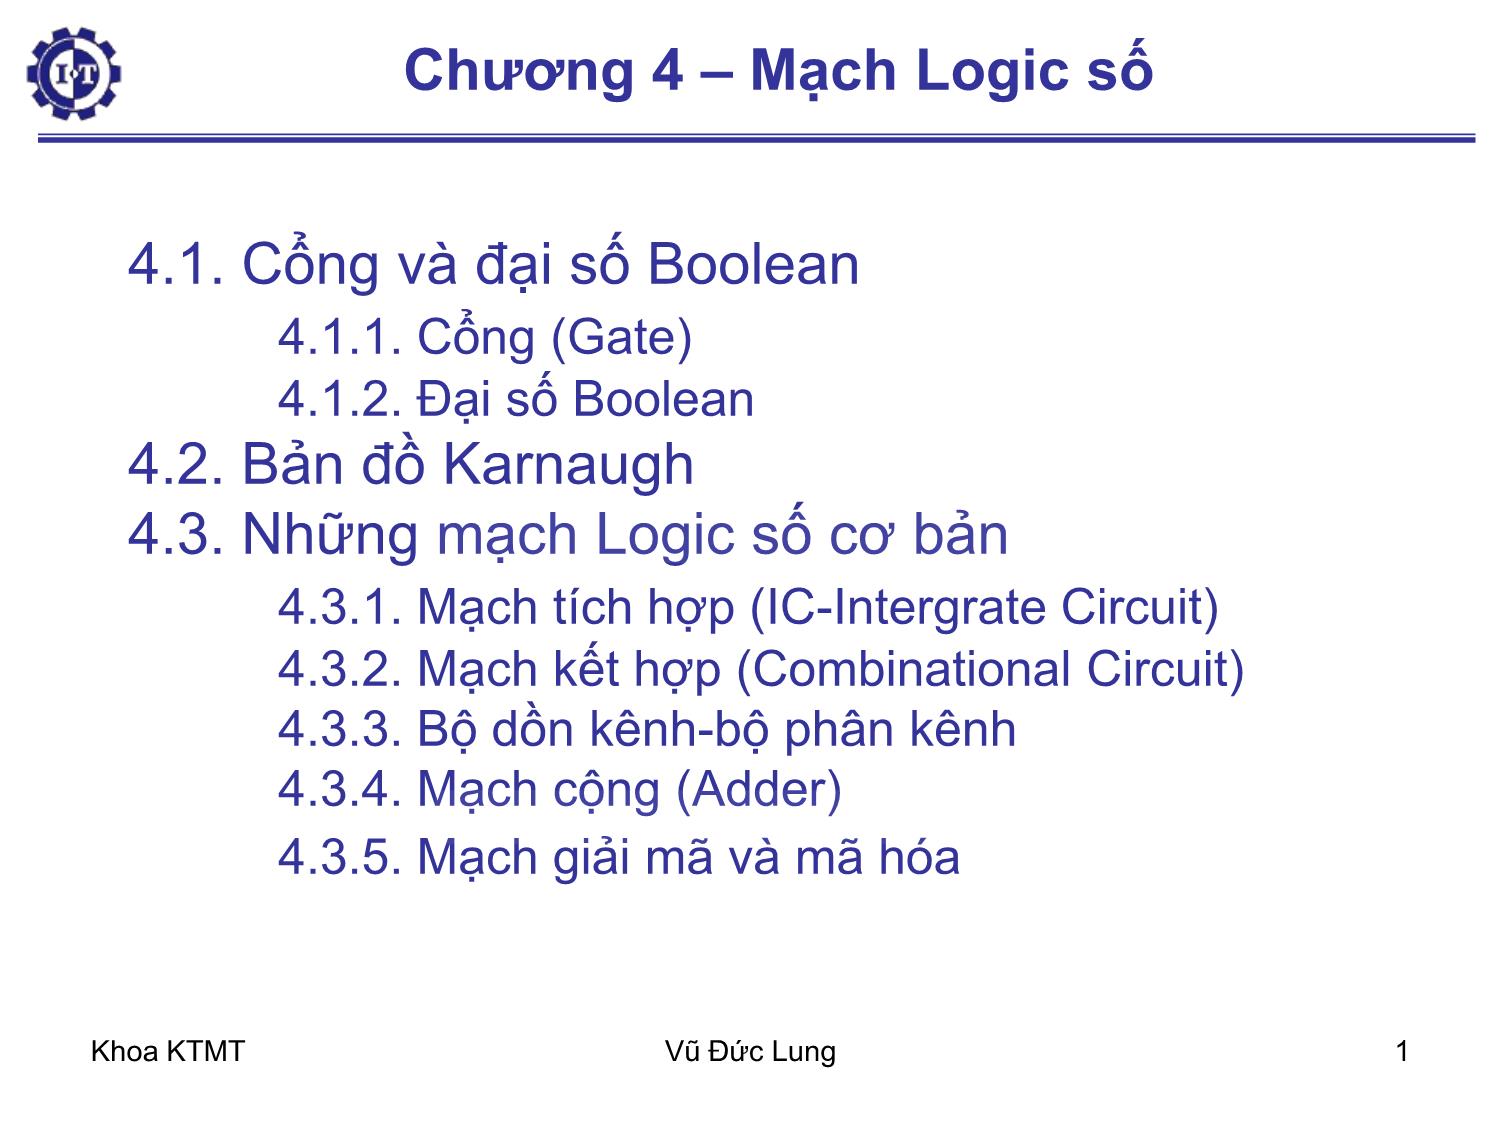 Bài giảng Kiến trúc máy tính 1 - Chương 4: Mạch logic số - Vũ Đức Lung trang 1